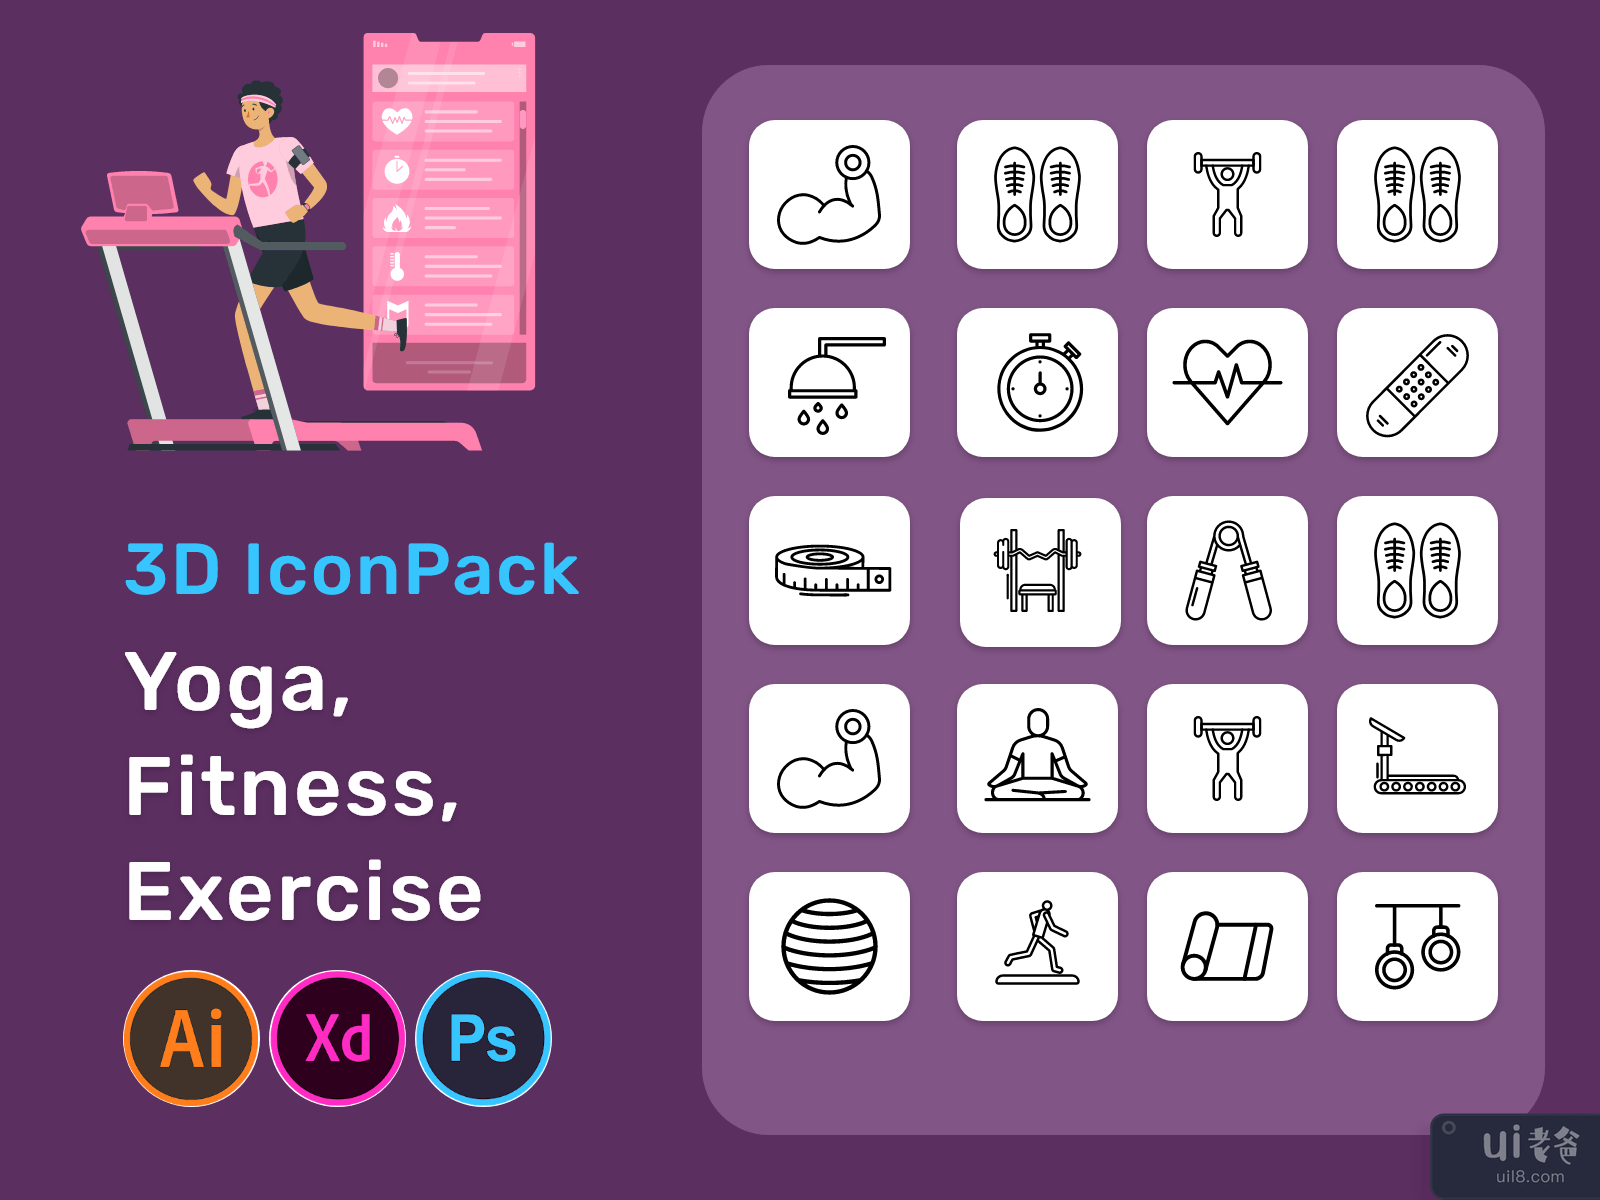 瑜伽，健身，锻炼 3D 图标包(Yoga, Fitness, Exercise 3D Icon Pack)插图